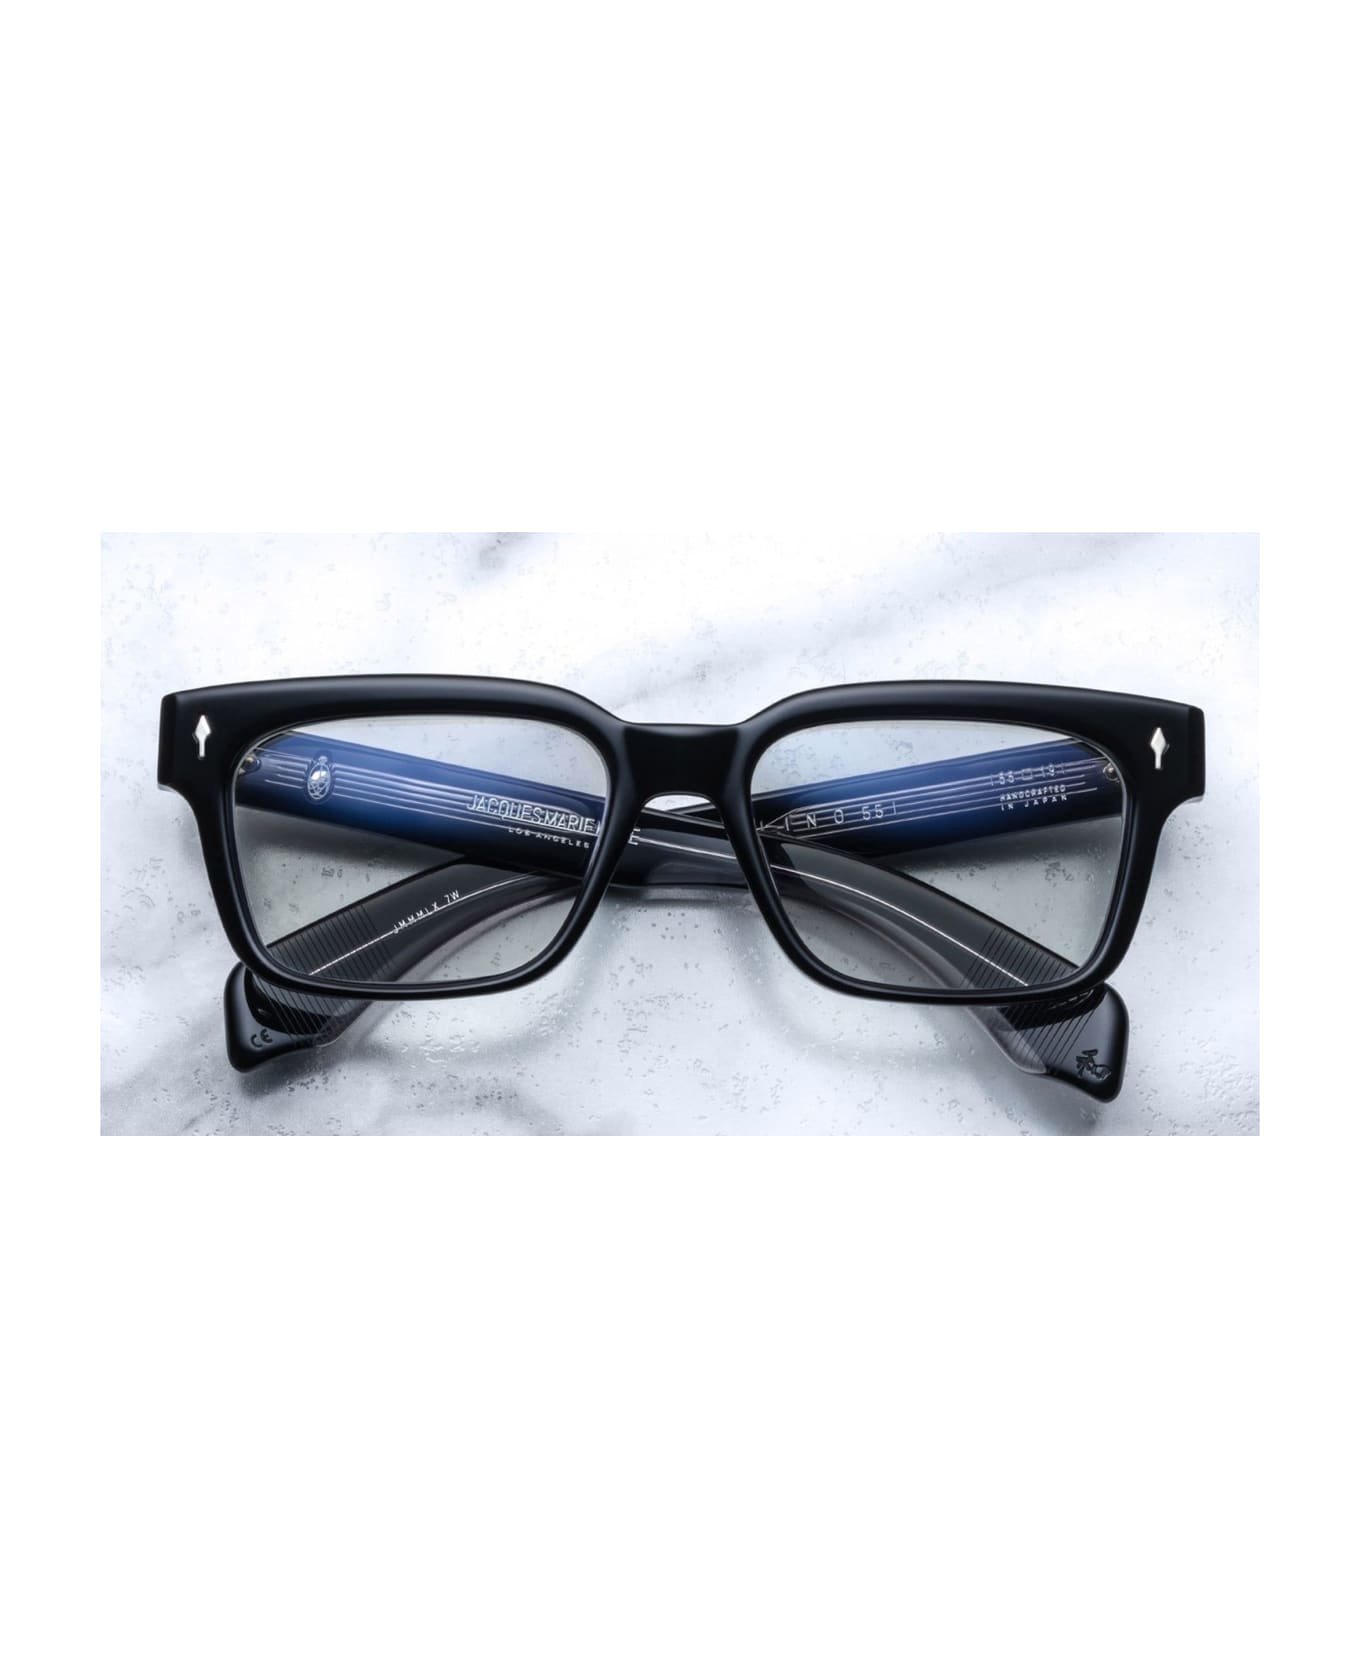 Jacques Marie Mage Molino 55 - Apollo Rx Glasses